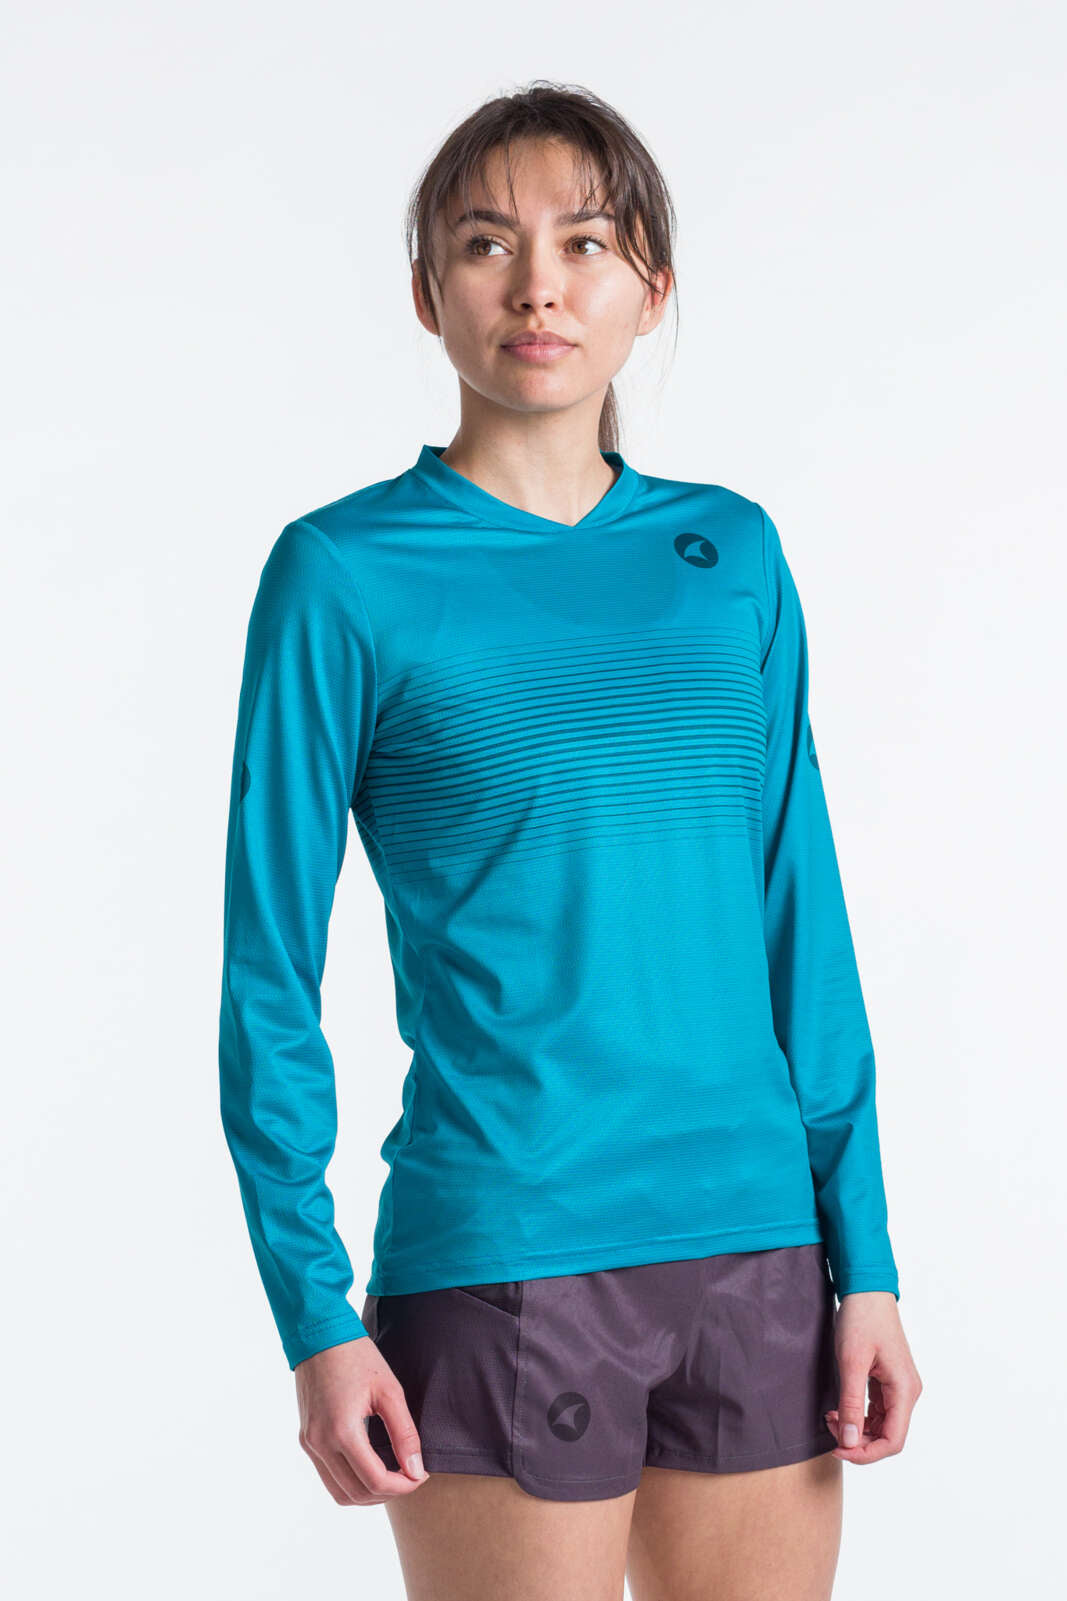 Women's Long Sleeve Running Shirt - Front View